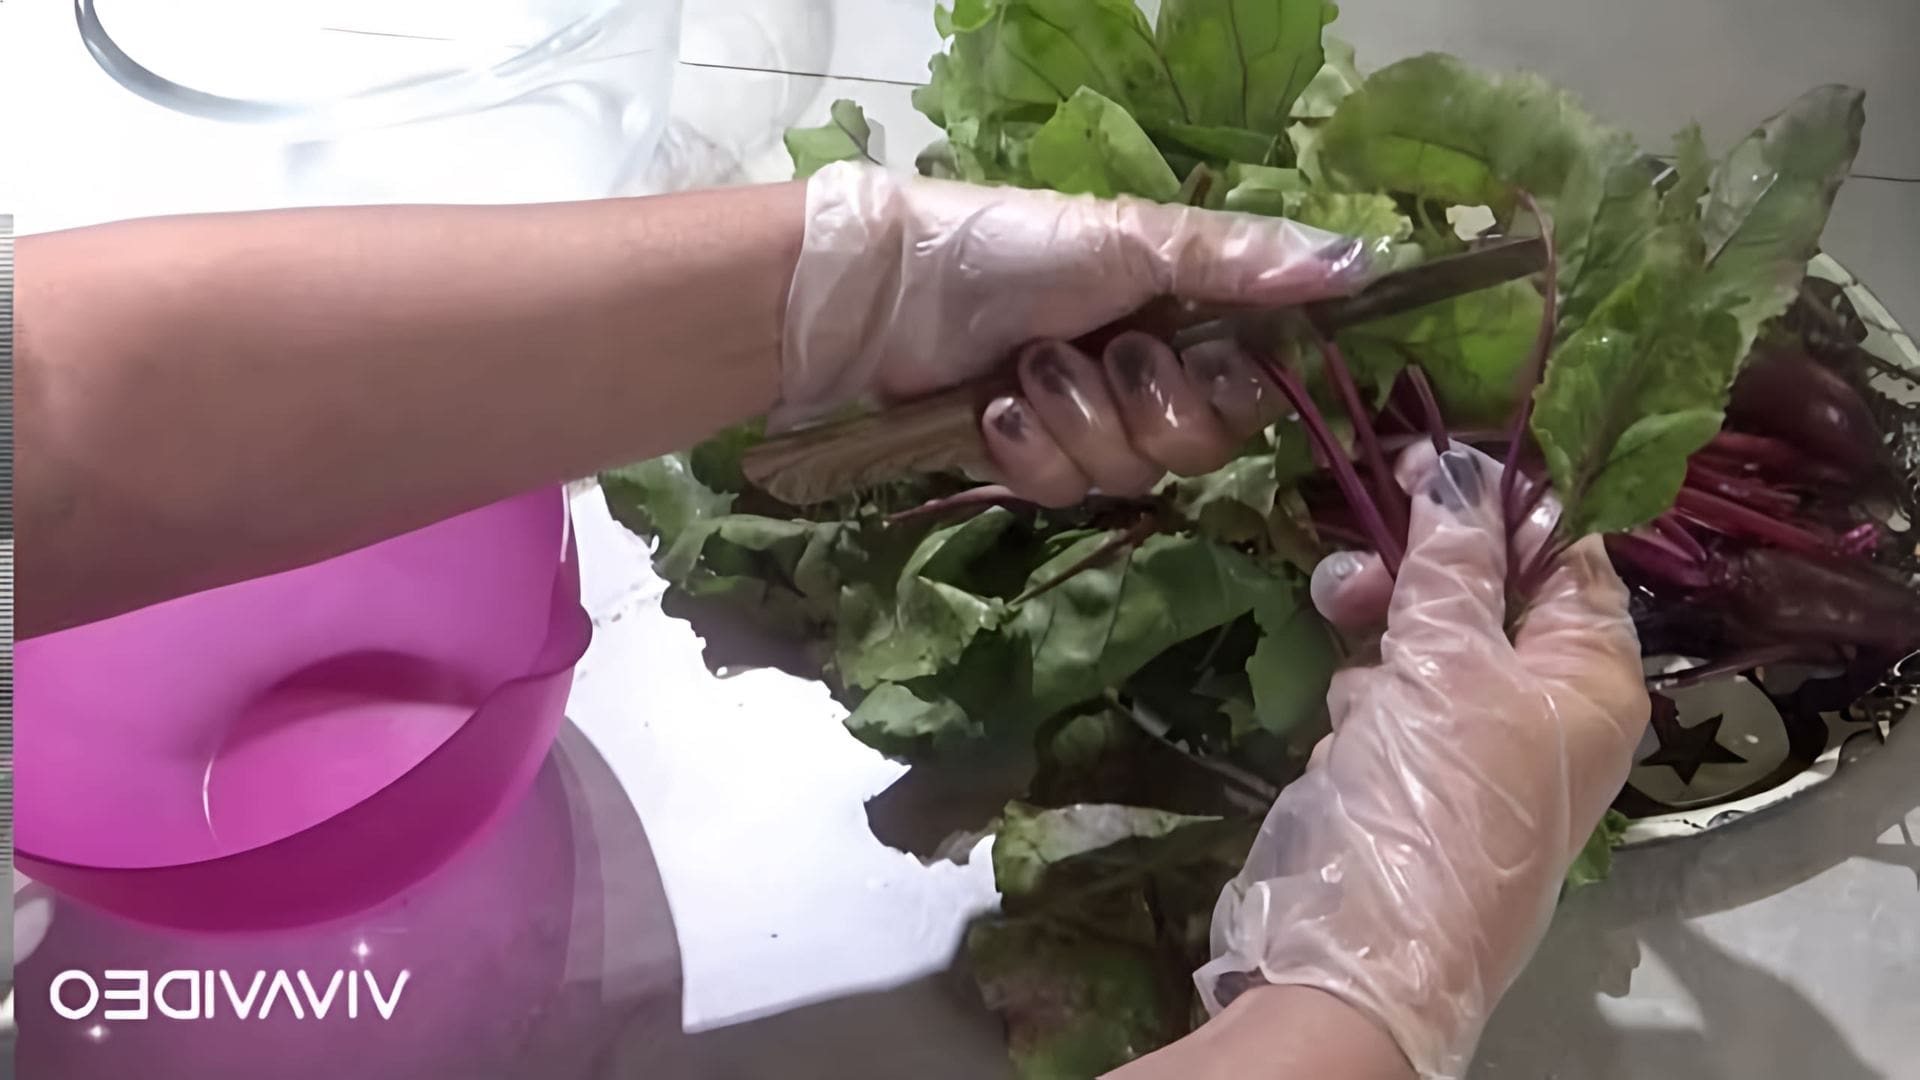 Видео демонстрирует два рецепта приготовления листьев свёклы - маринованных листьев свёклы и омлета с листьями свёклы